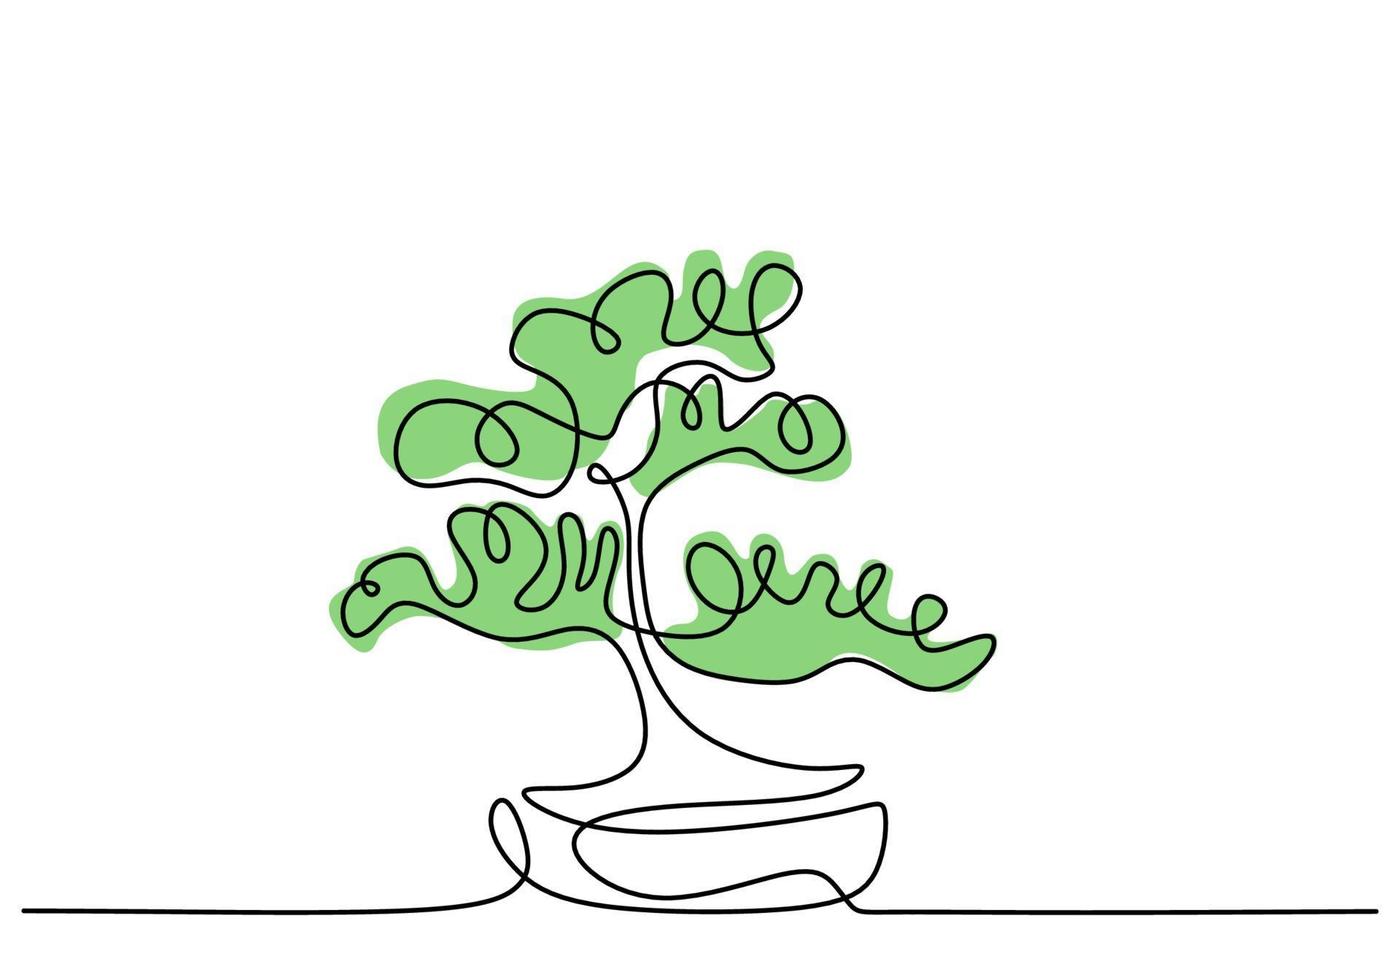 doorlopende lijntekening van aard bonsaiboom in pot geïsoleerd op een witte achtergrond. schoonheid en verse chinese of japanse banyan plant voor home art wall decor. botanisch kamerplantthema vector